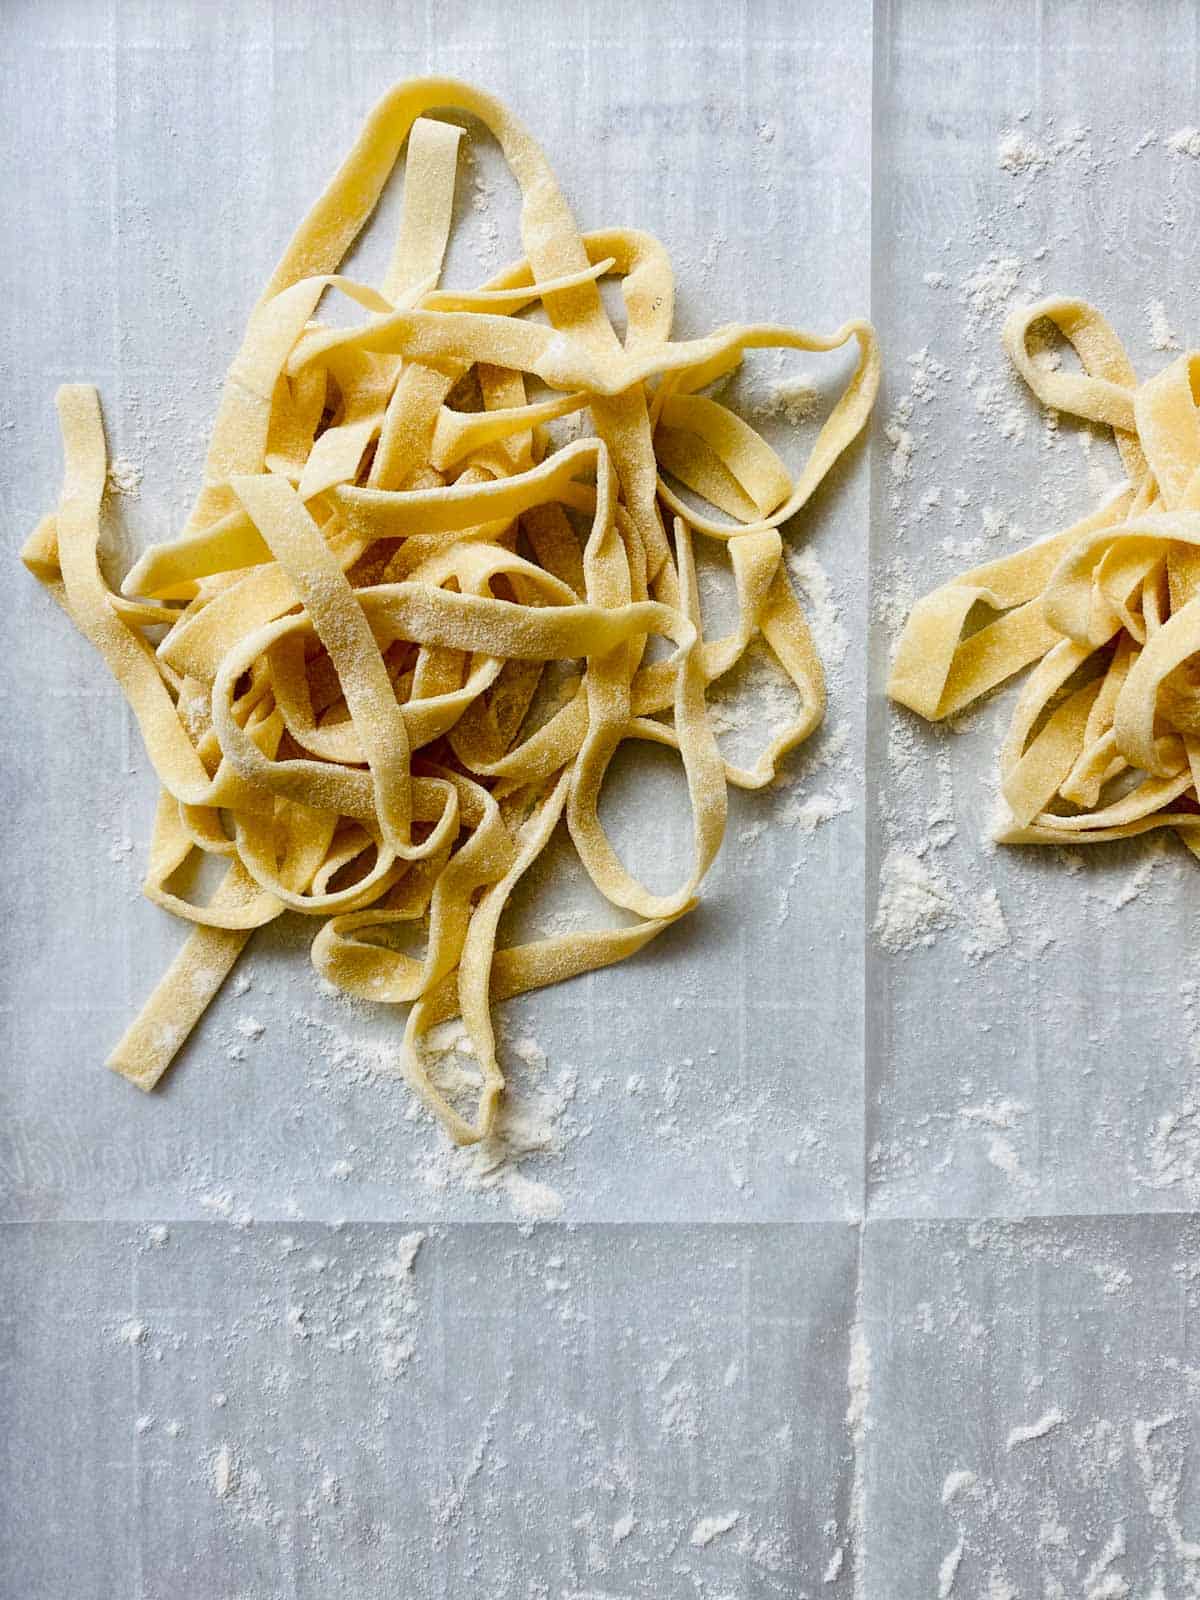 Nest of pasta noodles